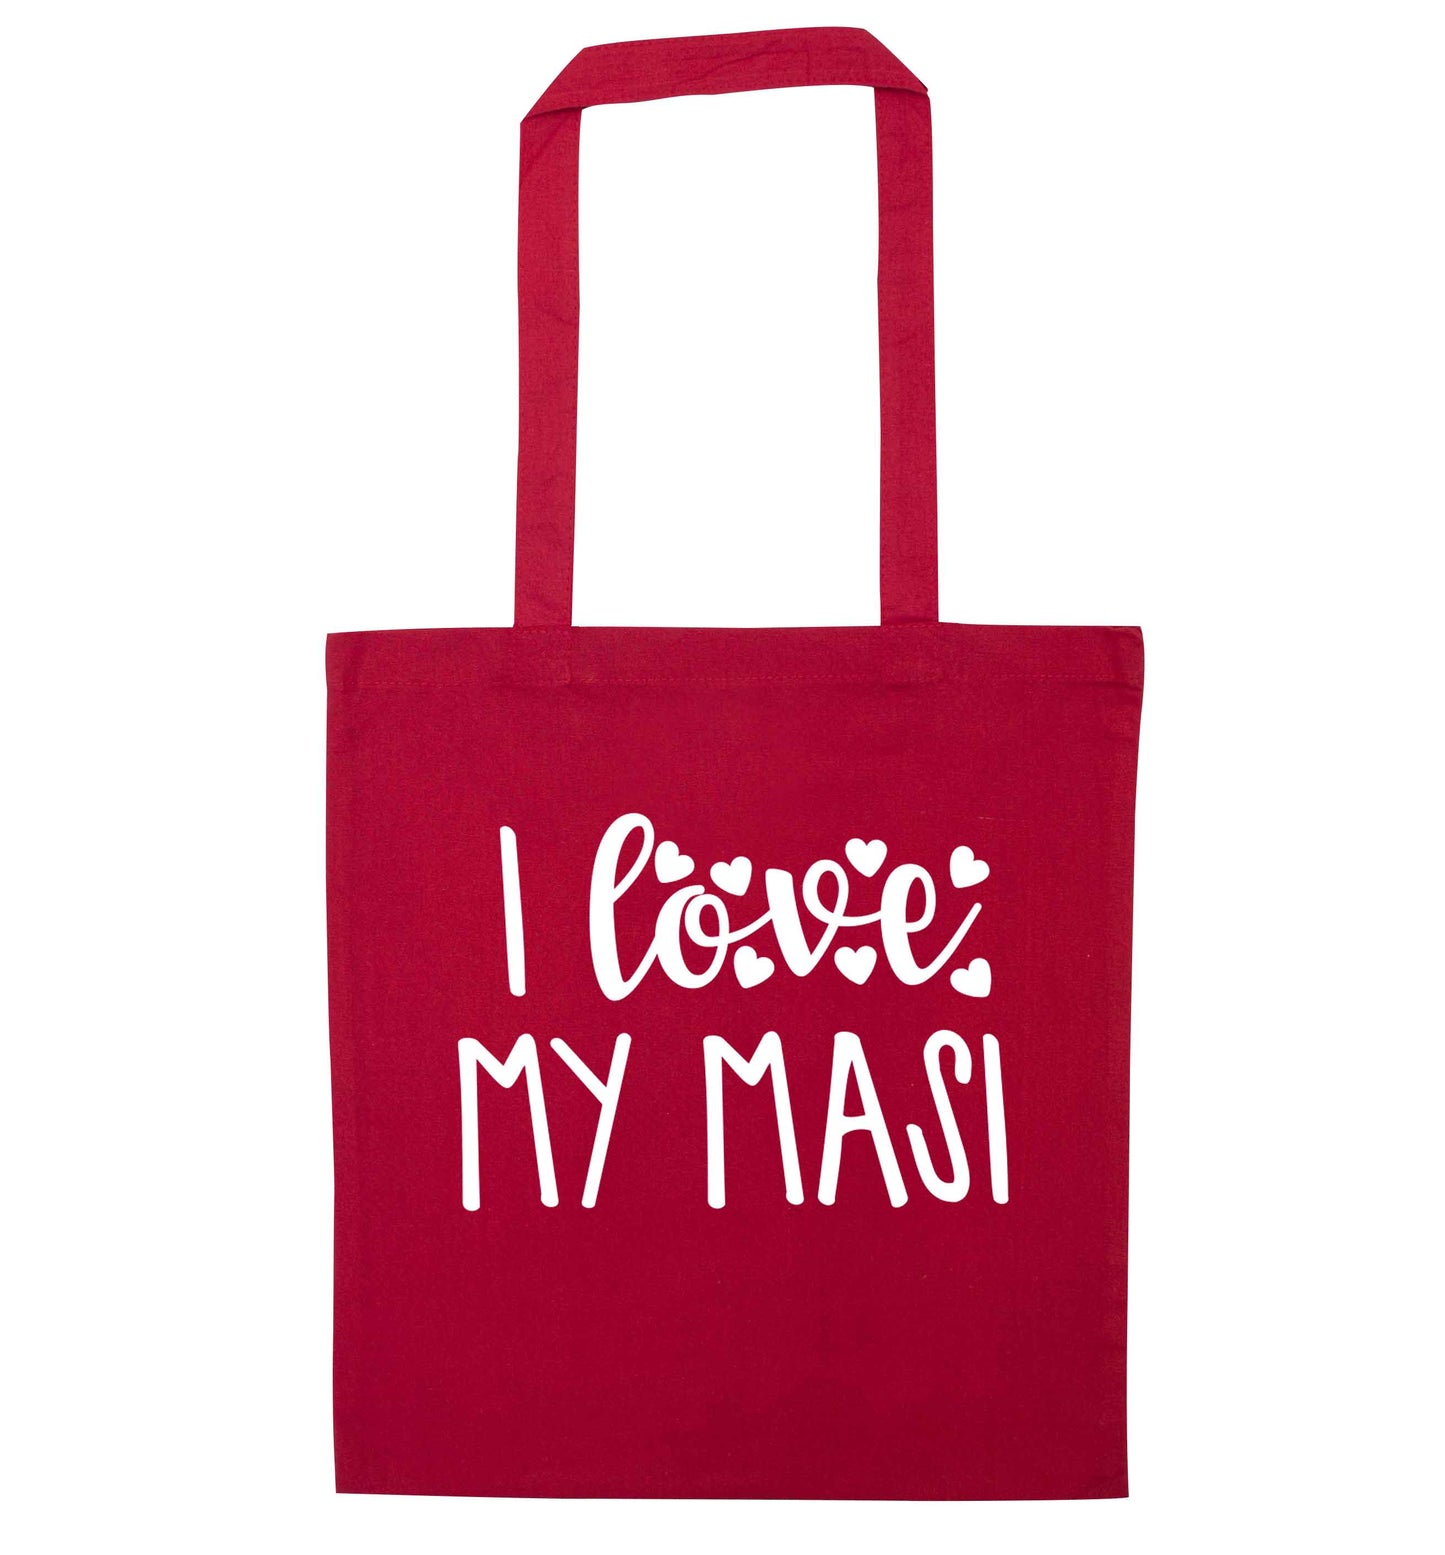 I love my masi red tote bag